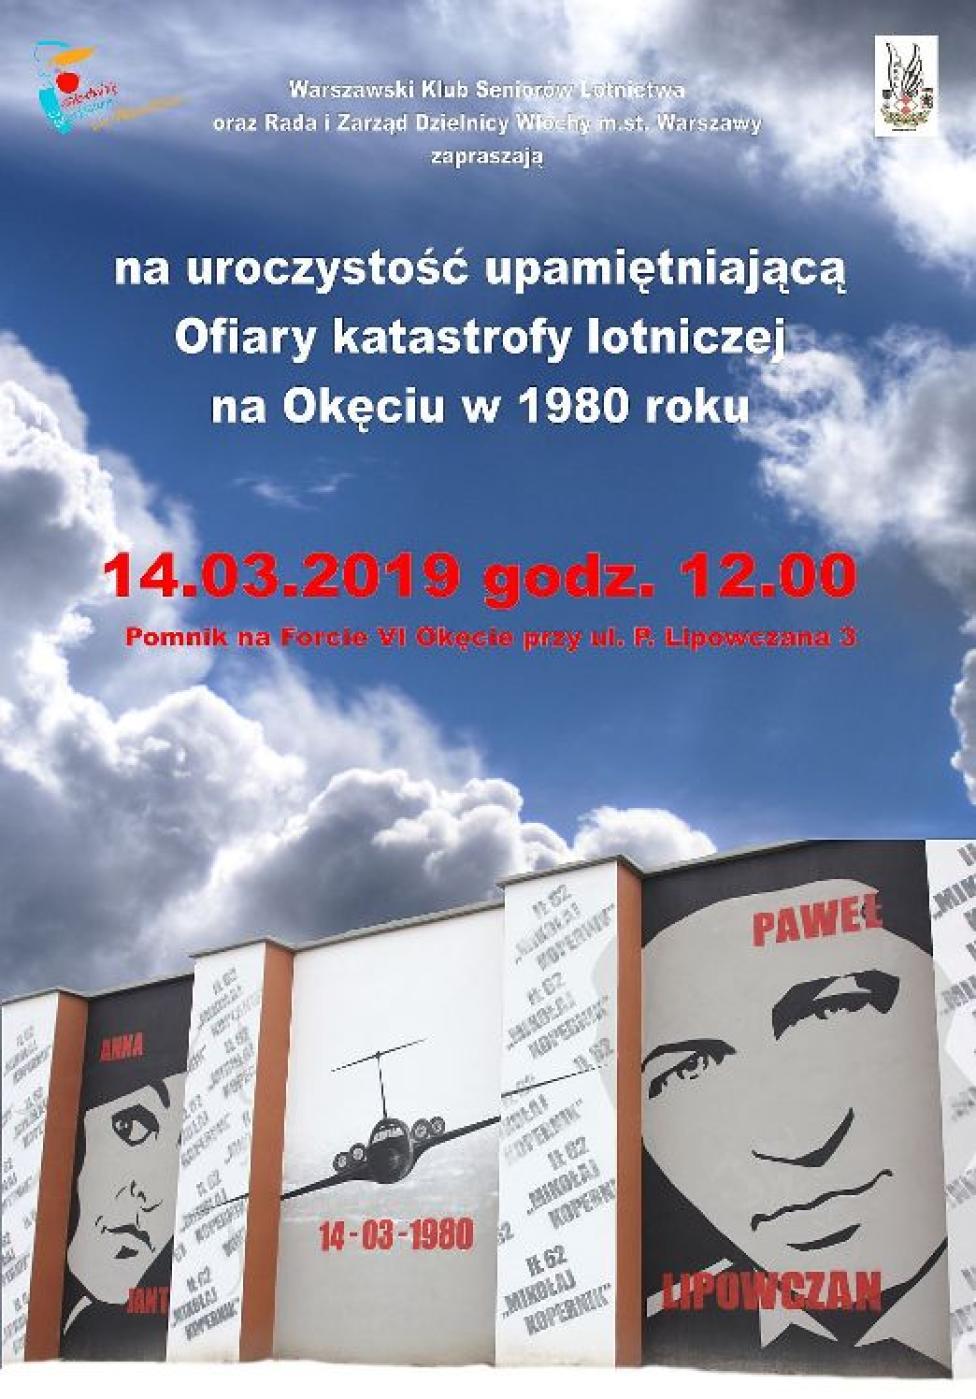 Zaproszenie na uroczystość upamiętniającą ofiary katastrofy samolotu "Mikołaj Kopernik" (fot. WKSL)